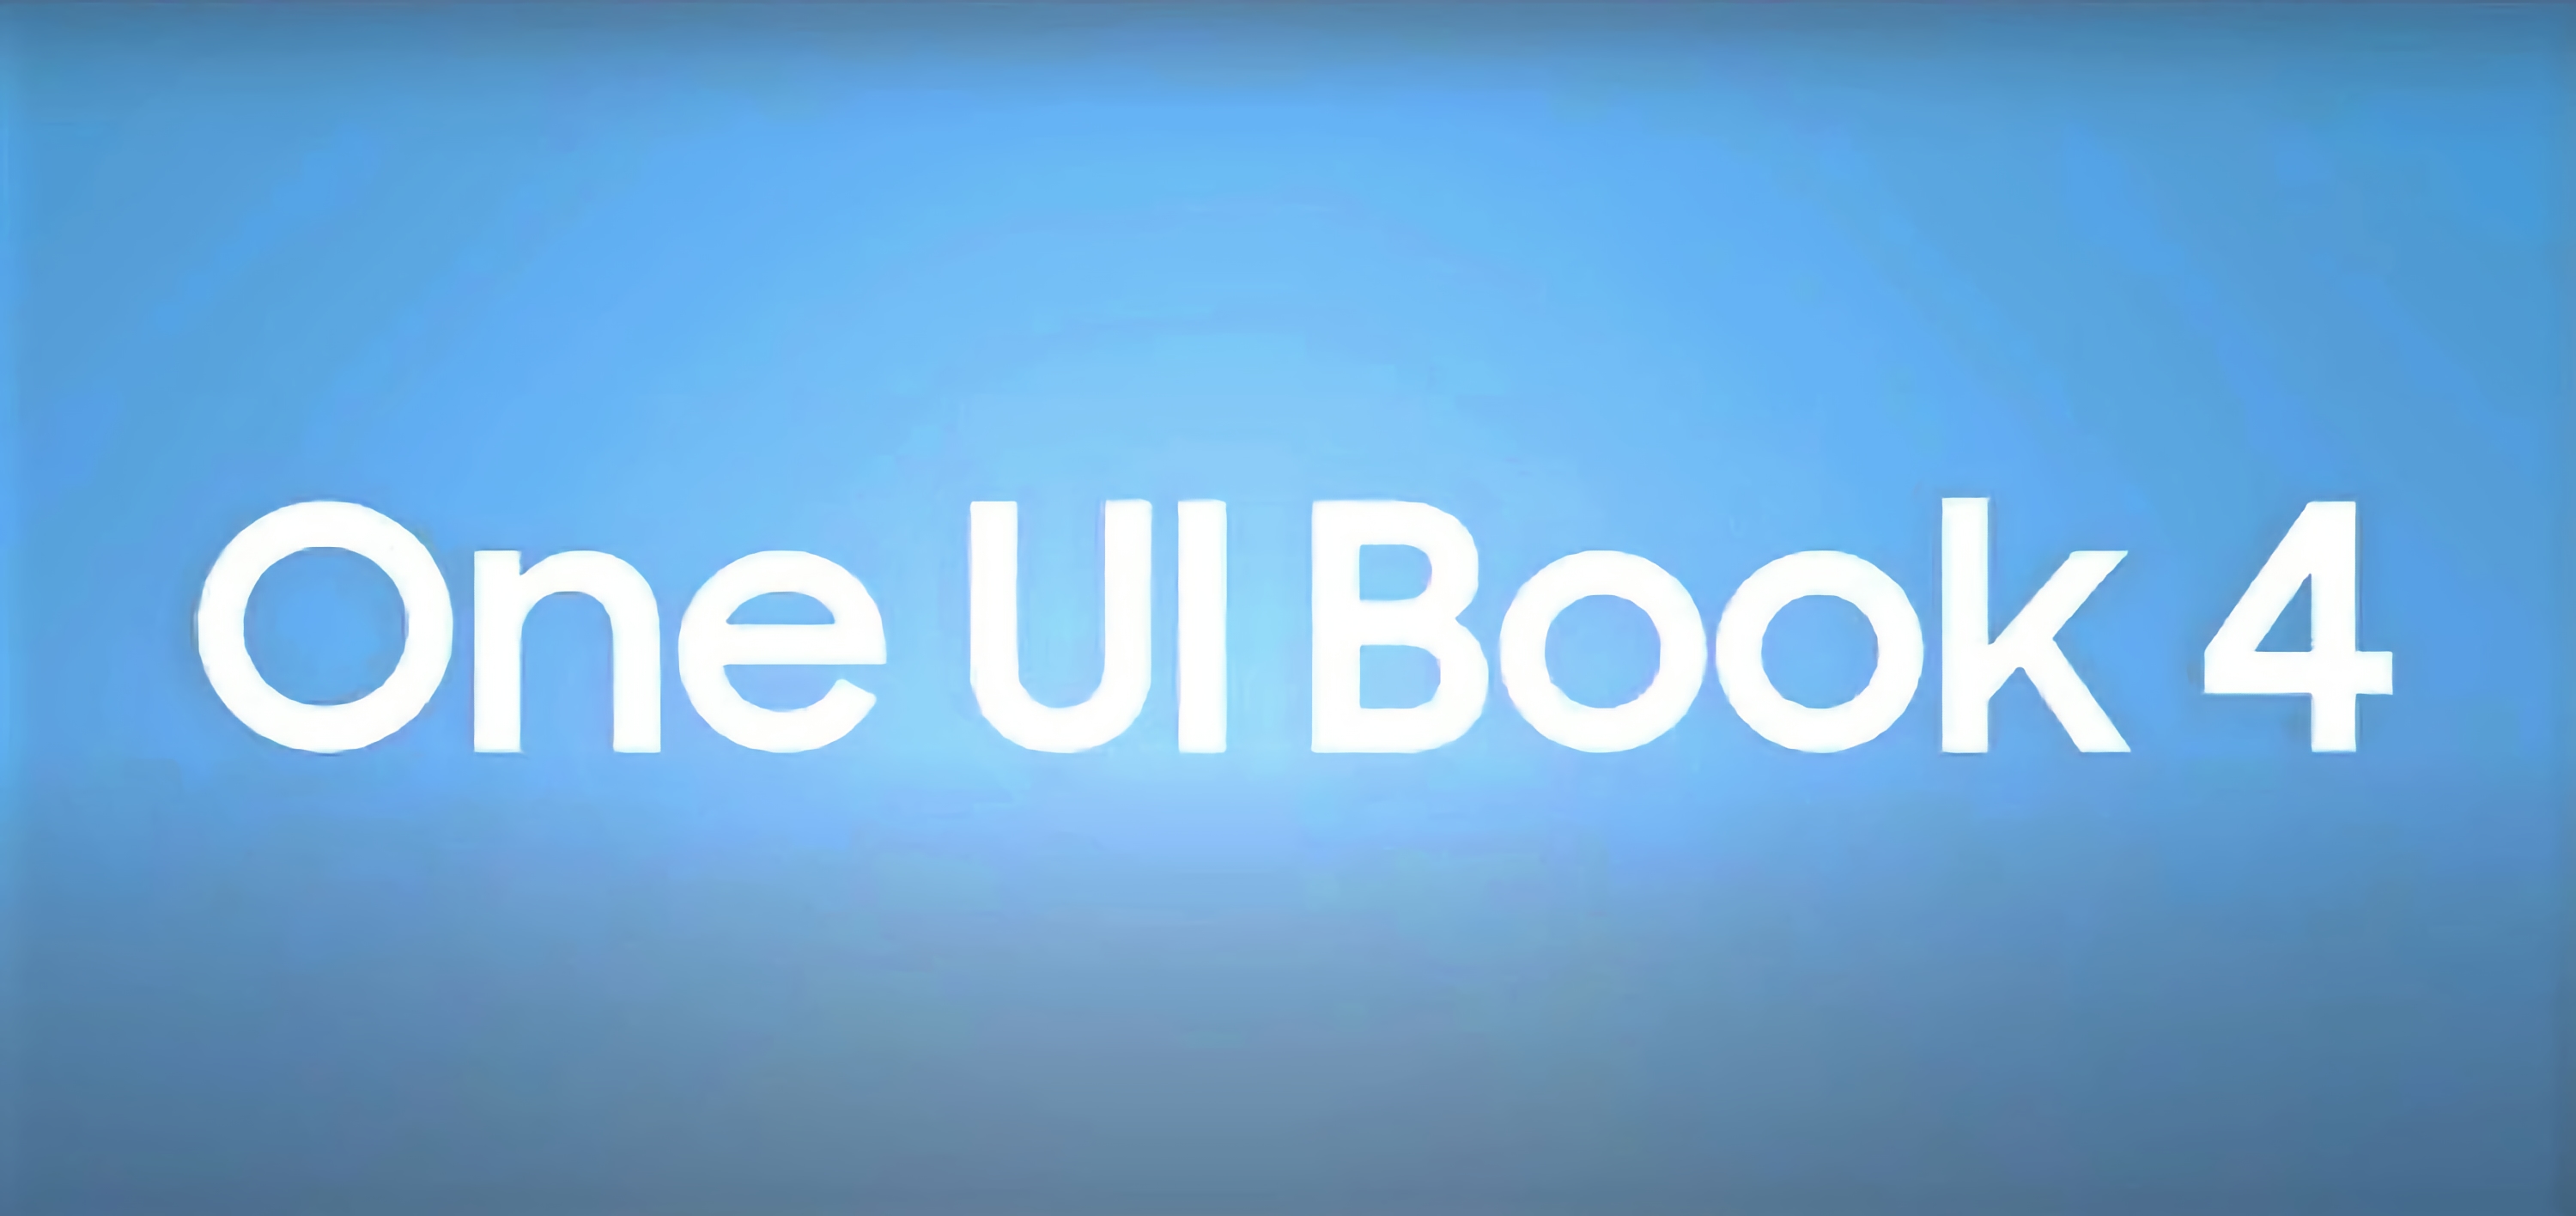 Samsung presenta el One UI Book 4: una carcasa de marca para portátiles con Windows